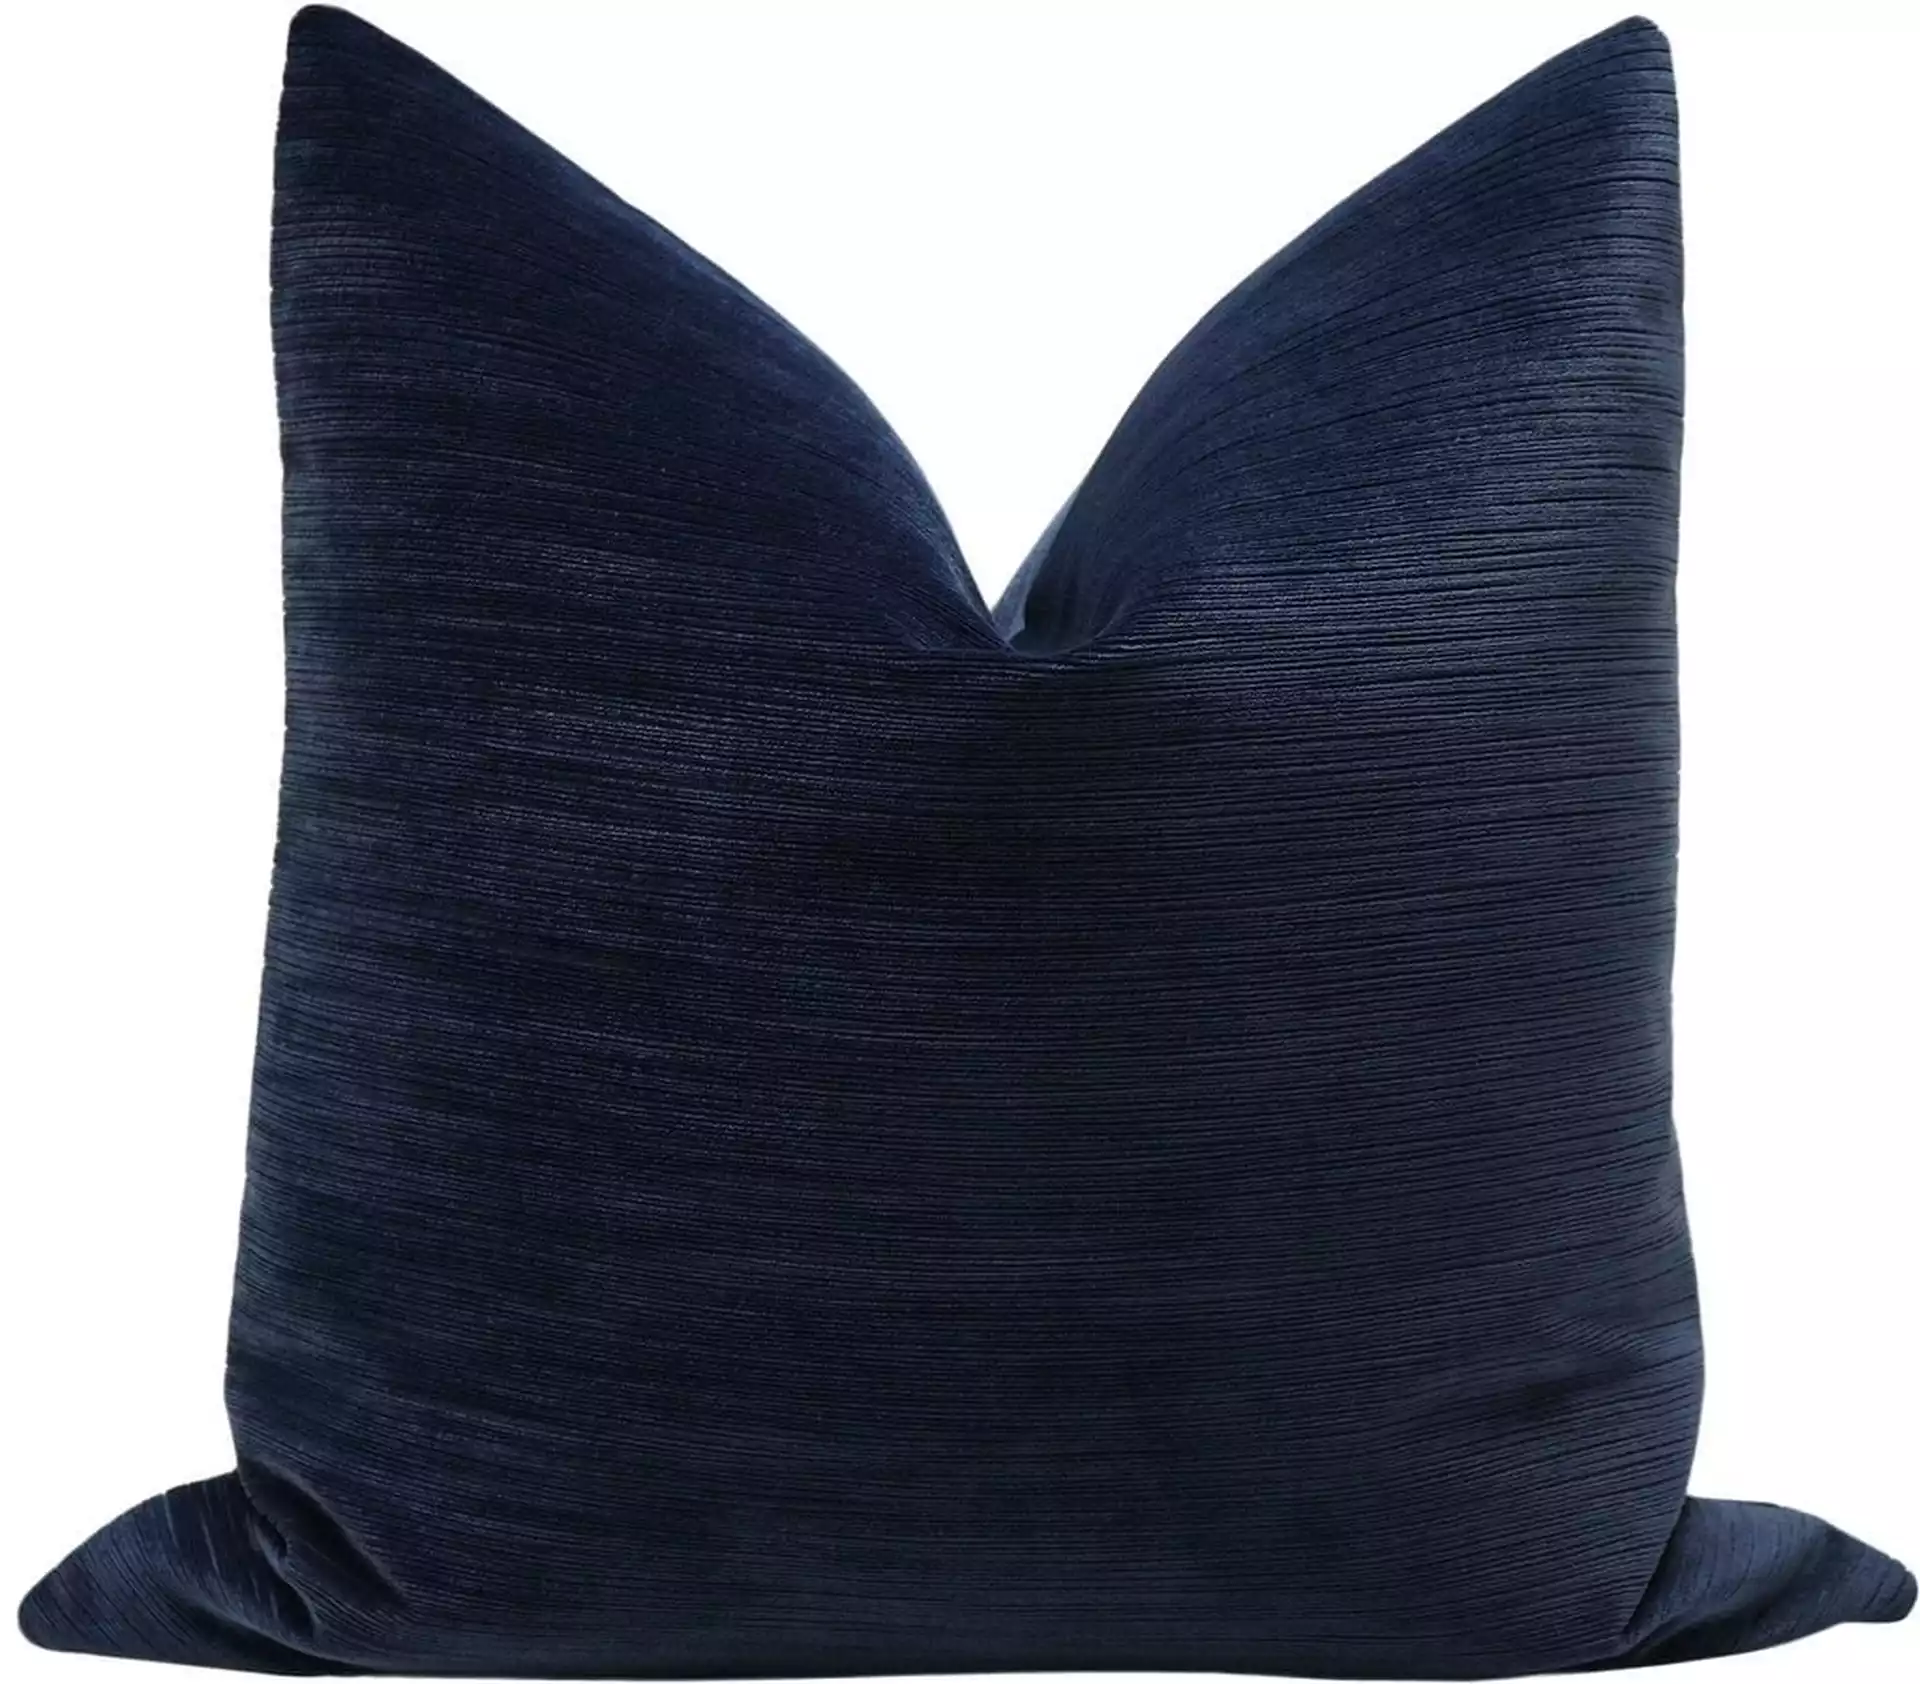 Strie Velvet Pillow Cover, Navy Blue, 20" x 20"